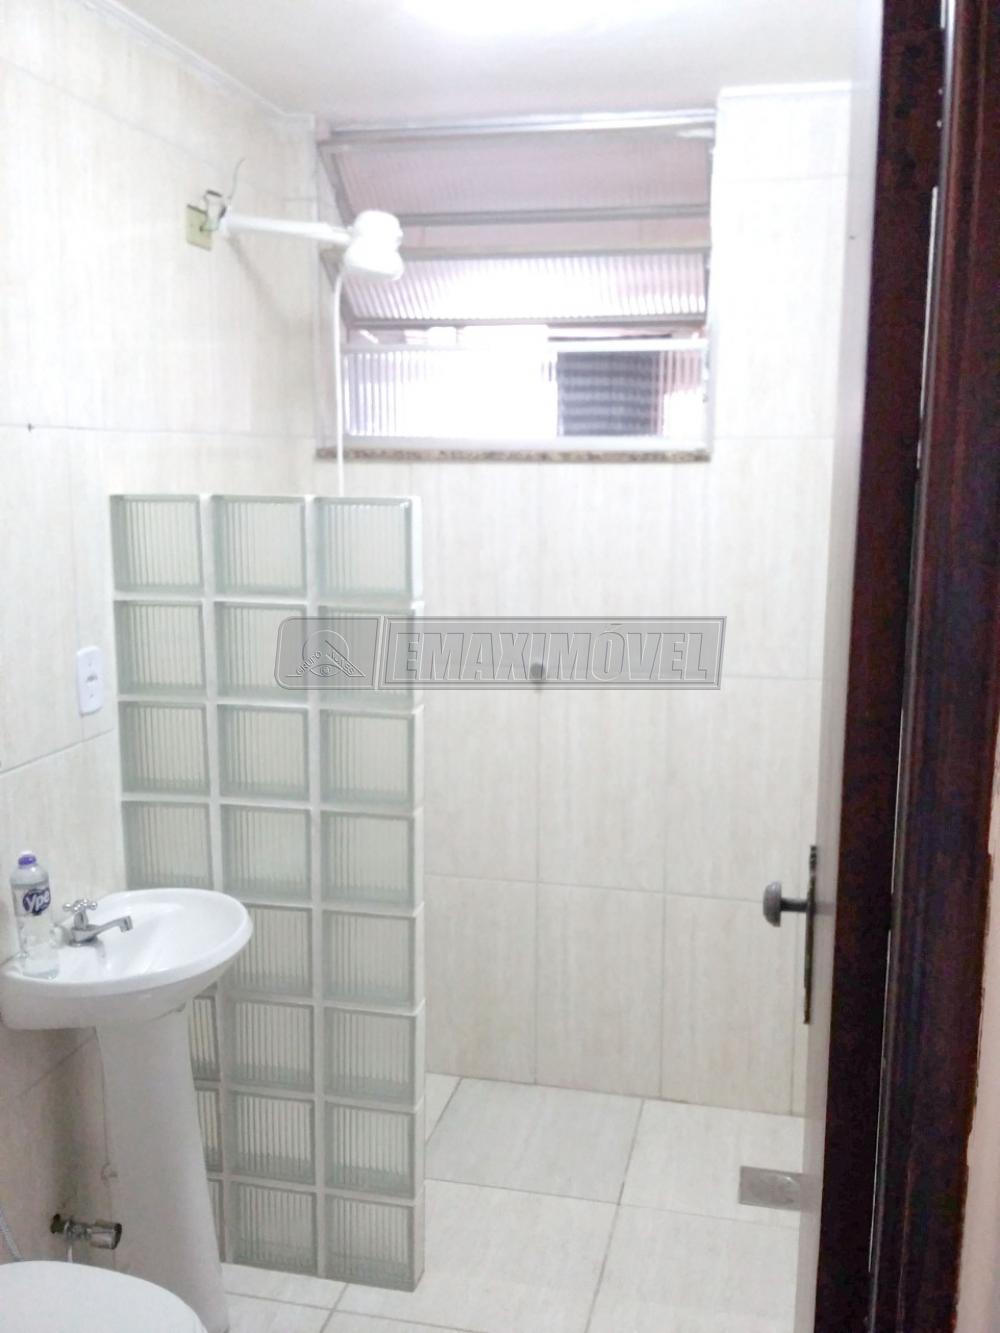 Comprar Apartamento / Padrão em Sorocaba R$ 290.000,00 - Foto 10